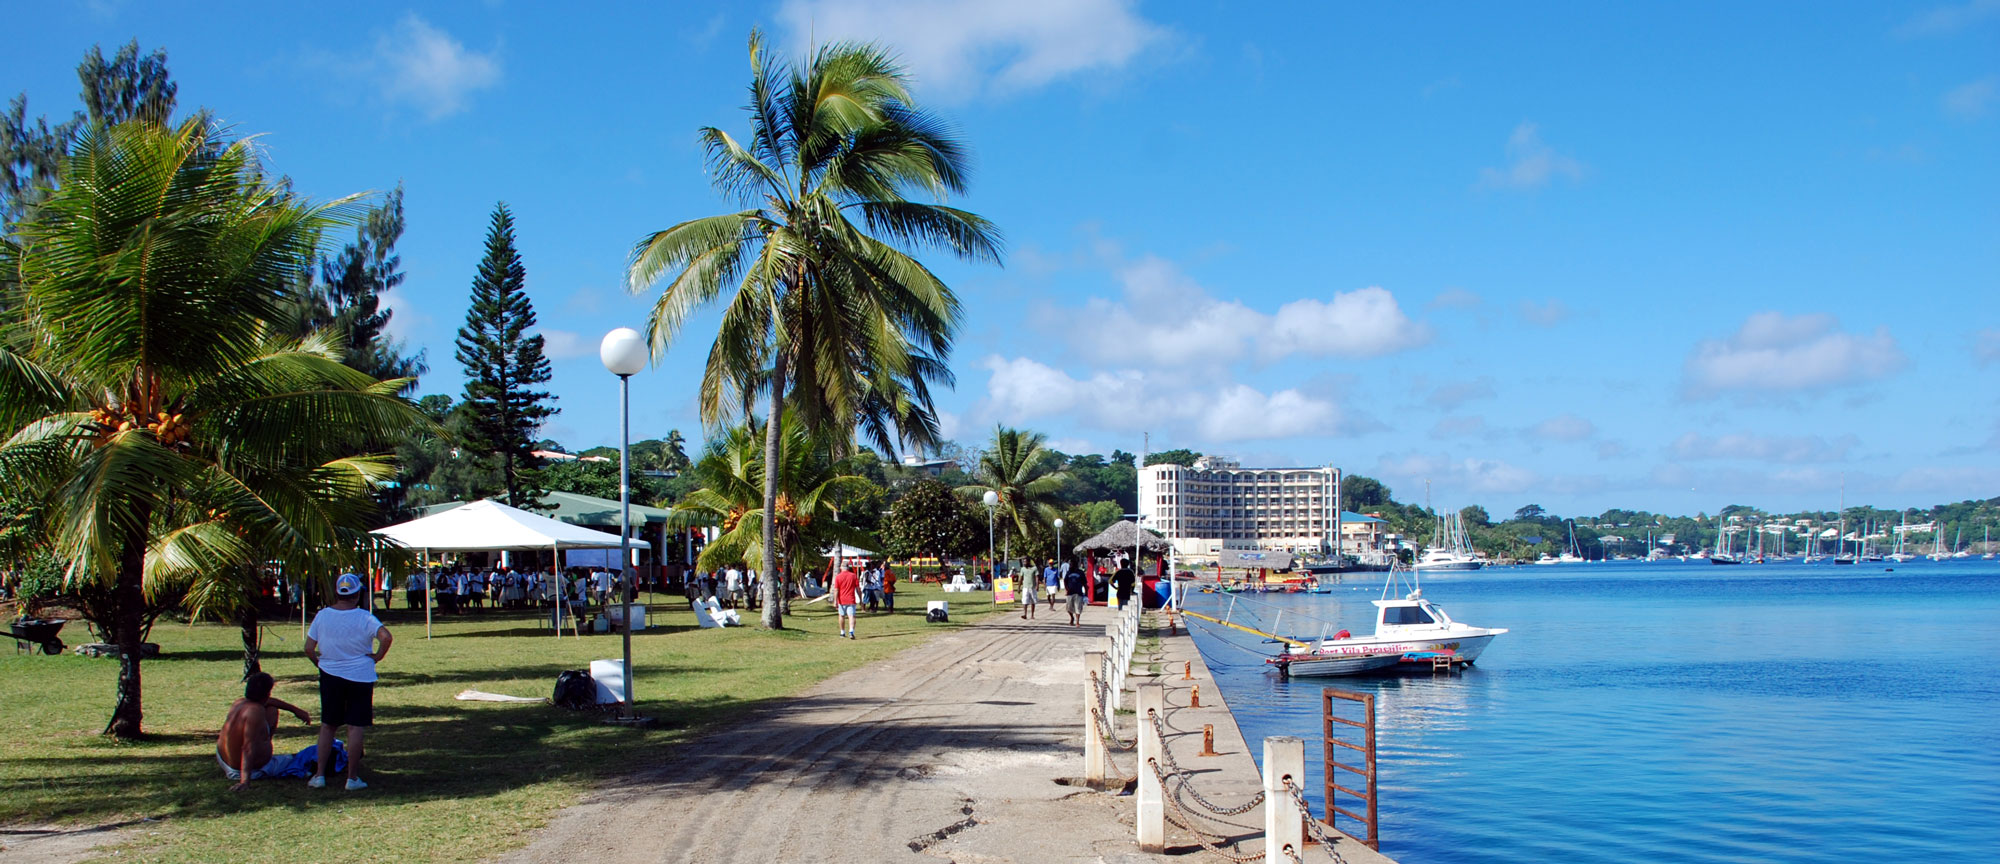 Port Vila waterfront, Vanuatu. (Photo: Geof Wilson/flickr)